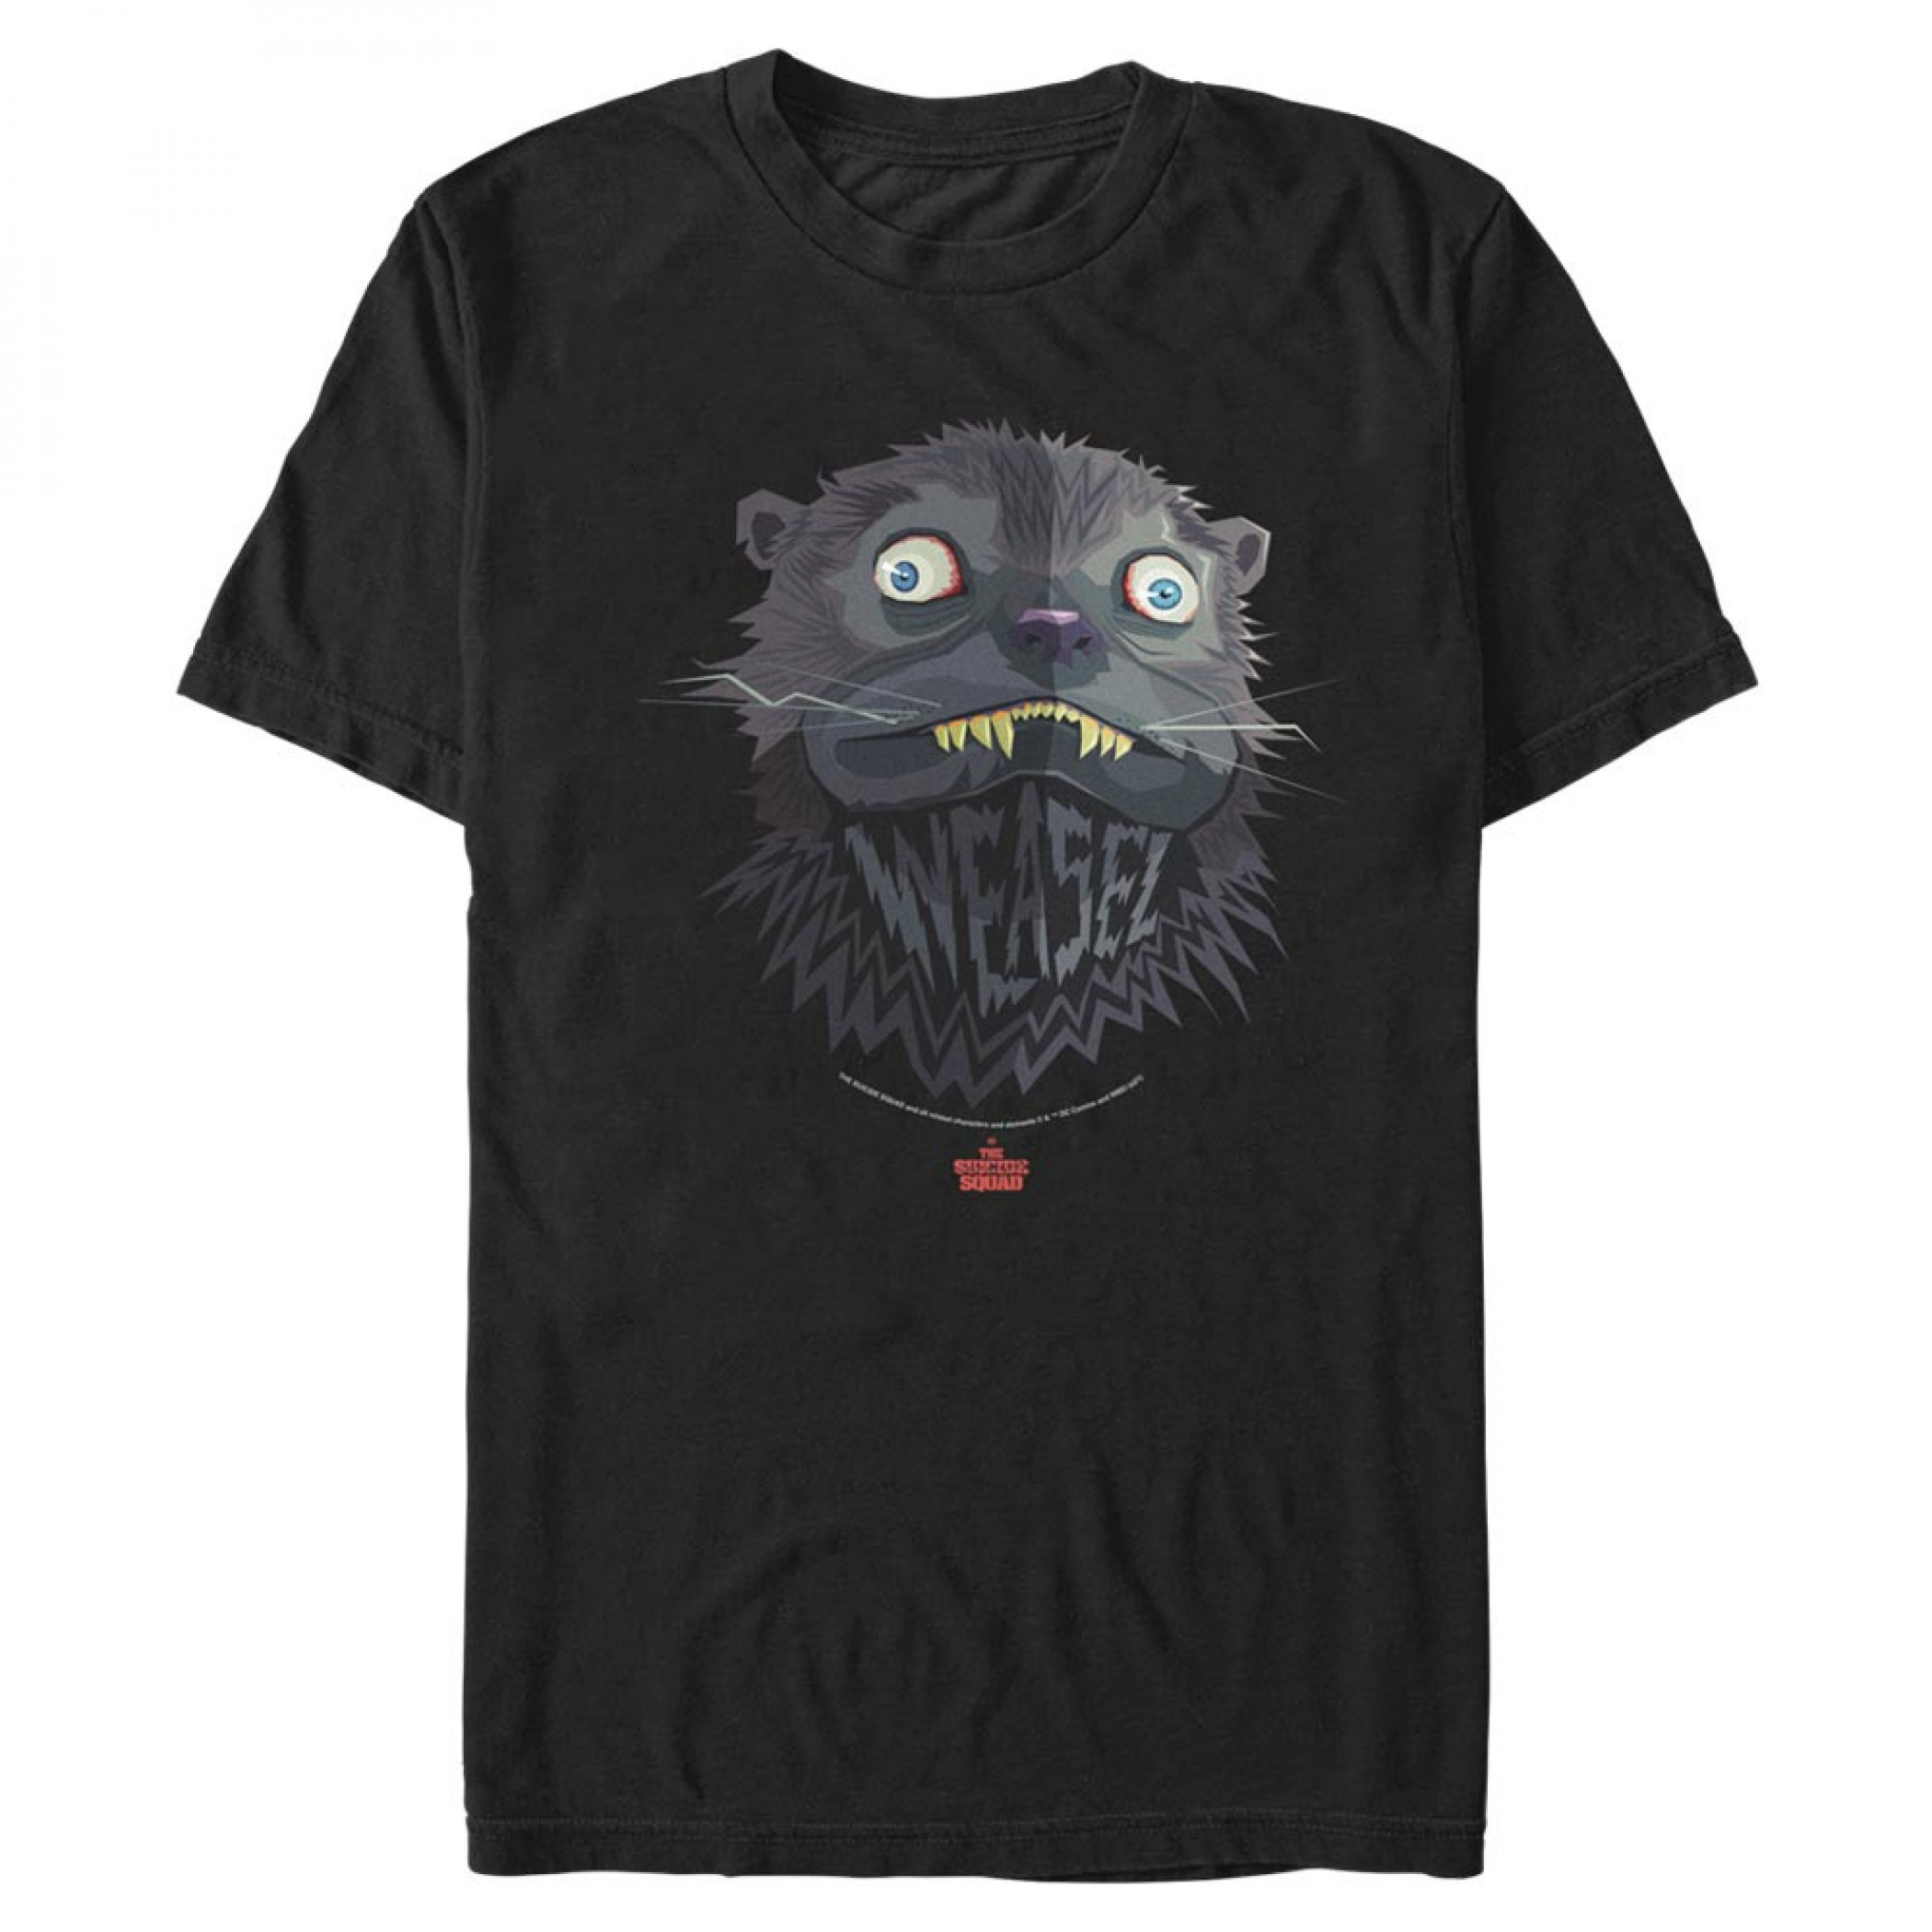 The Suicide Squad Weasel Character Portrait Men's T-Shirt